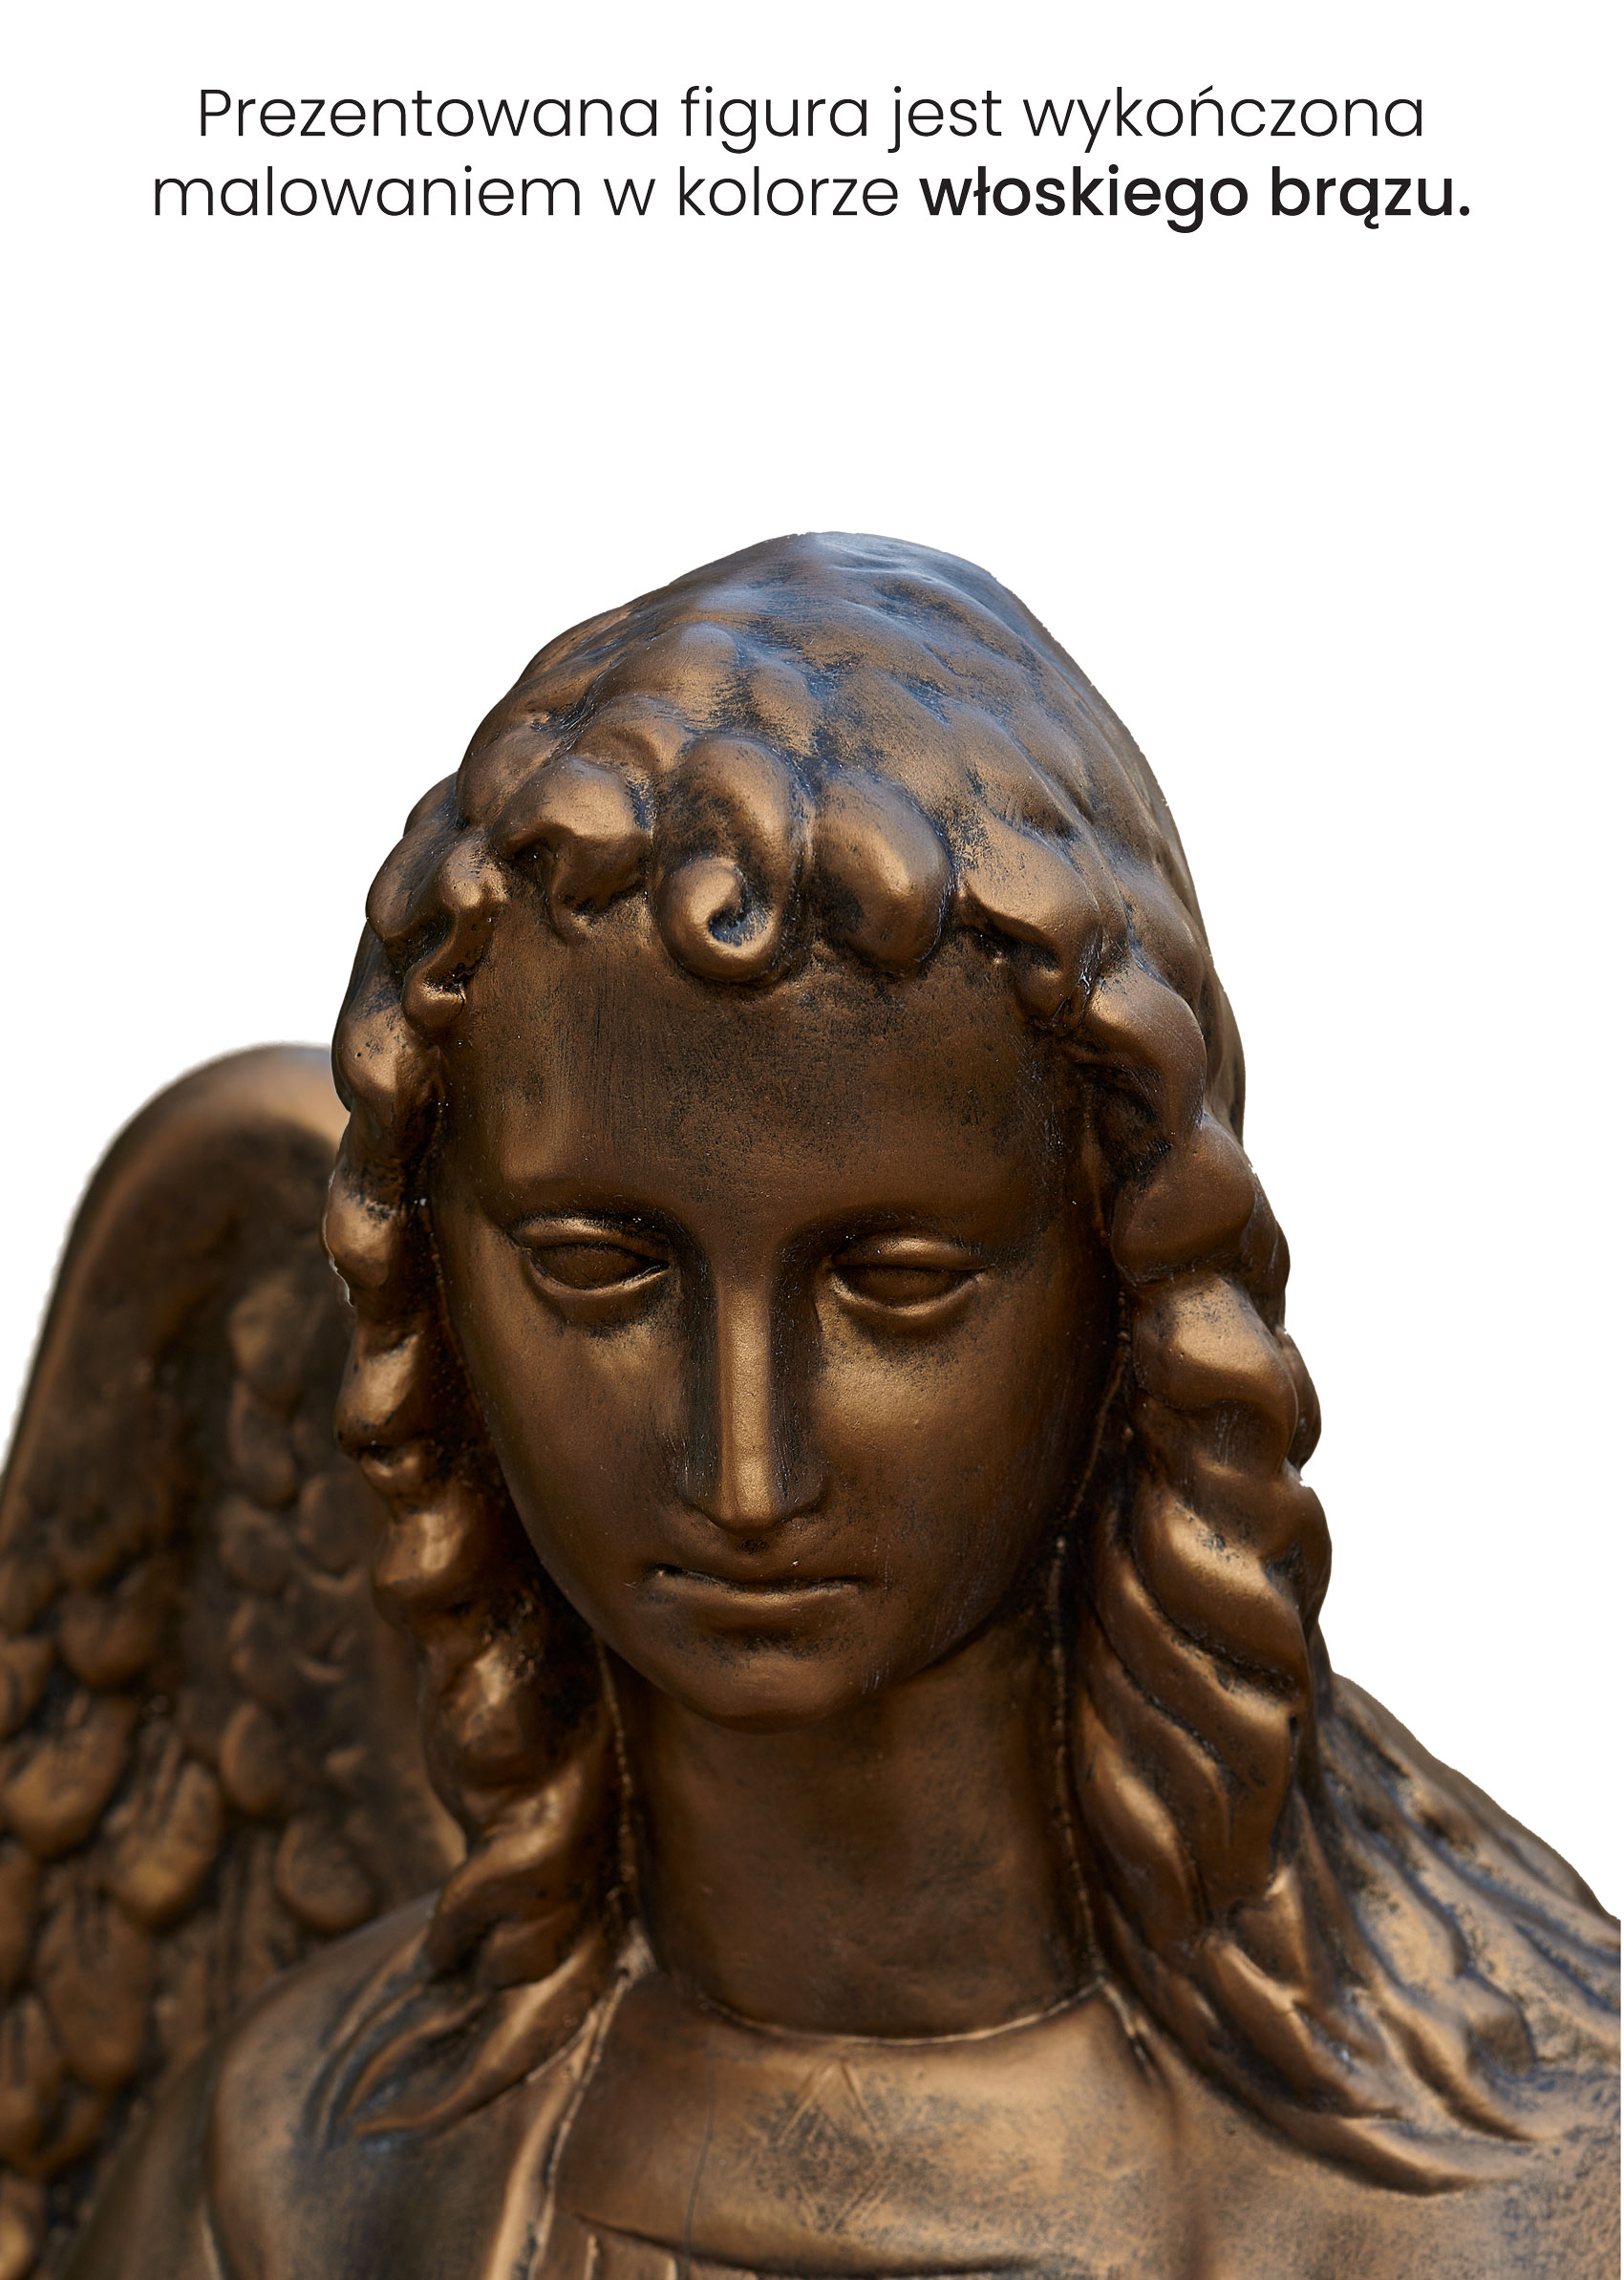 Anioł adorujący - Figura sakralna - 110 cm - R109